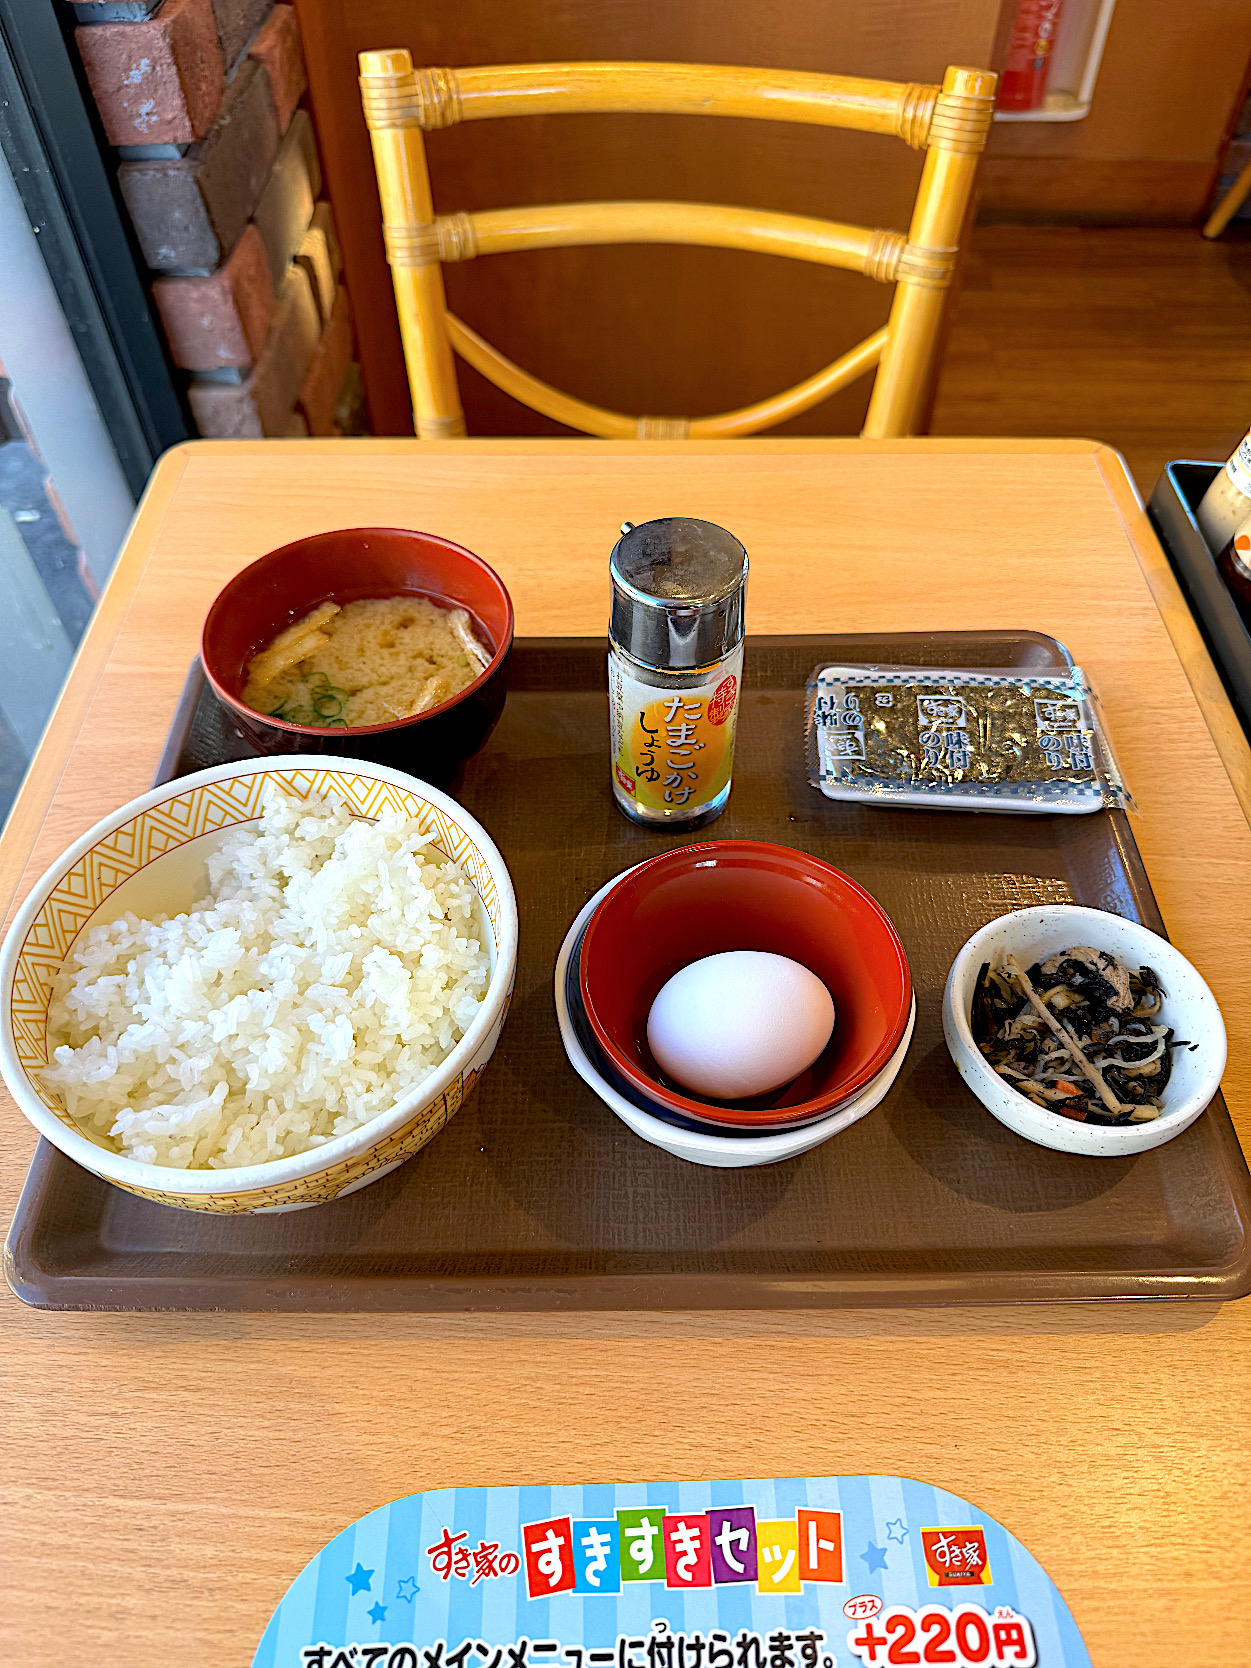 すき家のおすすめモーニング「たまかけ朝食」